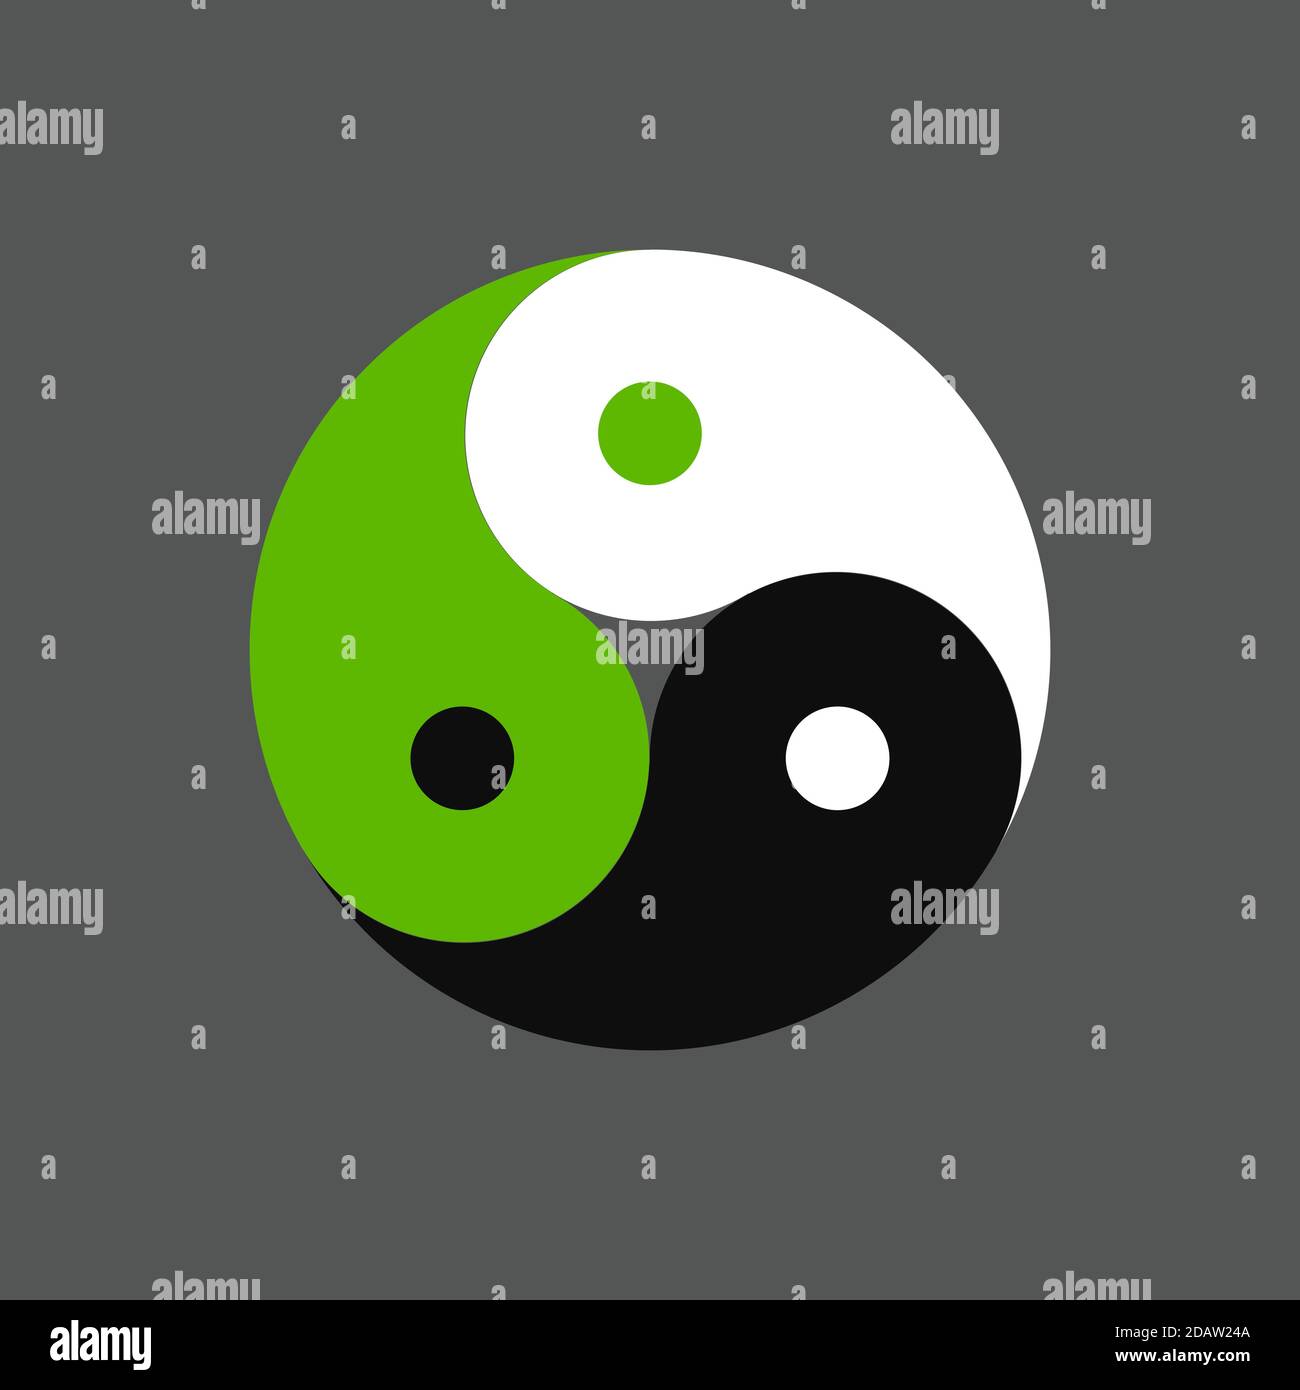 Triplo simbolo yin yang, tre colori in equilibrio. Bianco, nero e verde. Immagine vettoriale clip art per il design del logo. Illustrazione Vettoriale